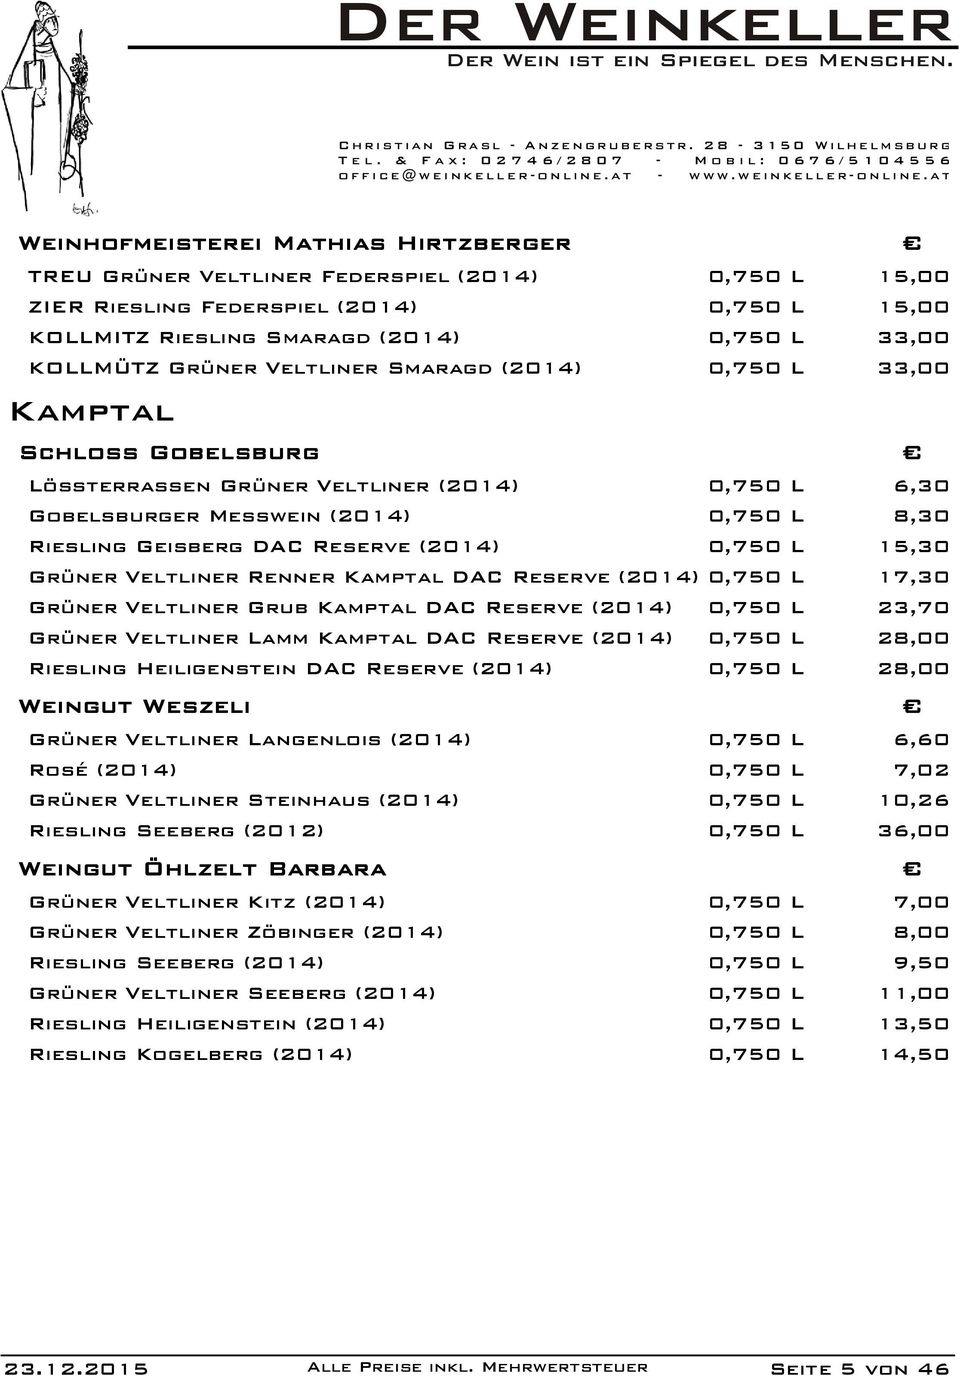 0,750 L 15,30 Grüner Veltliner Renner Kamptal DAC Reserve (2014) 0,750 L 17,30 Grüner Veltliner Grub Kamptal DAC Reserve (2014) 0,750 L 23,70 Grüner Veltliner Lamm Kamptal DAC Reserve (2014) 0,750 L